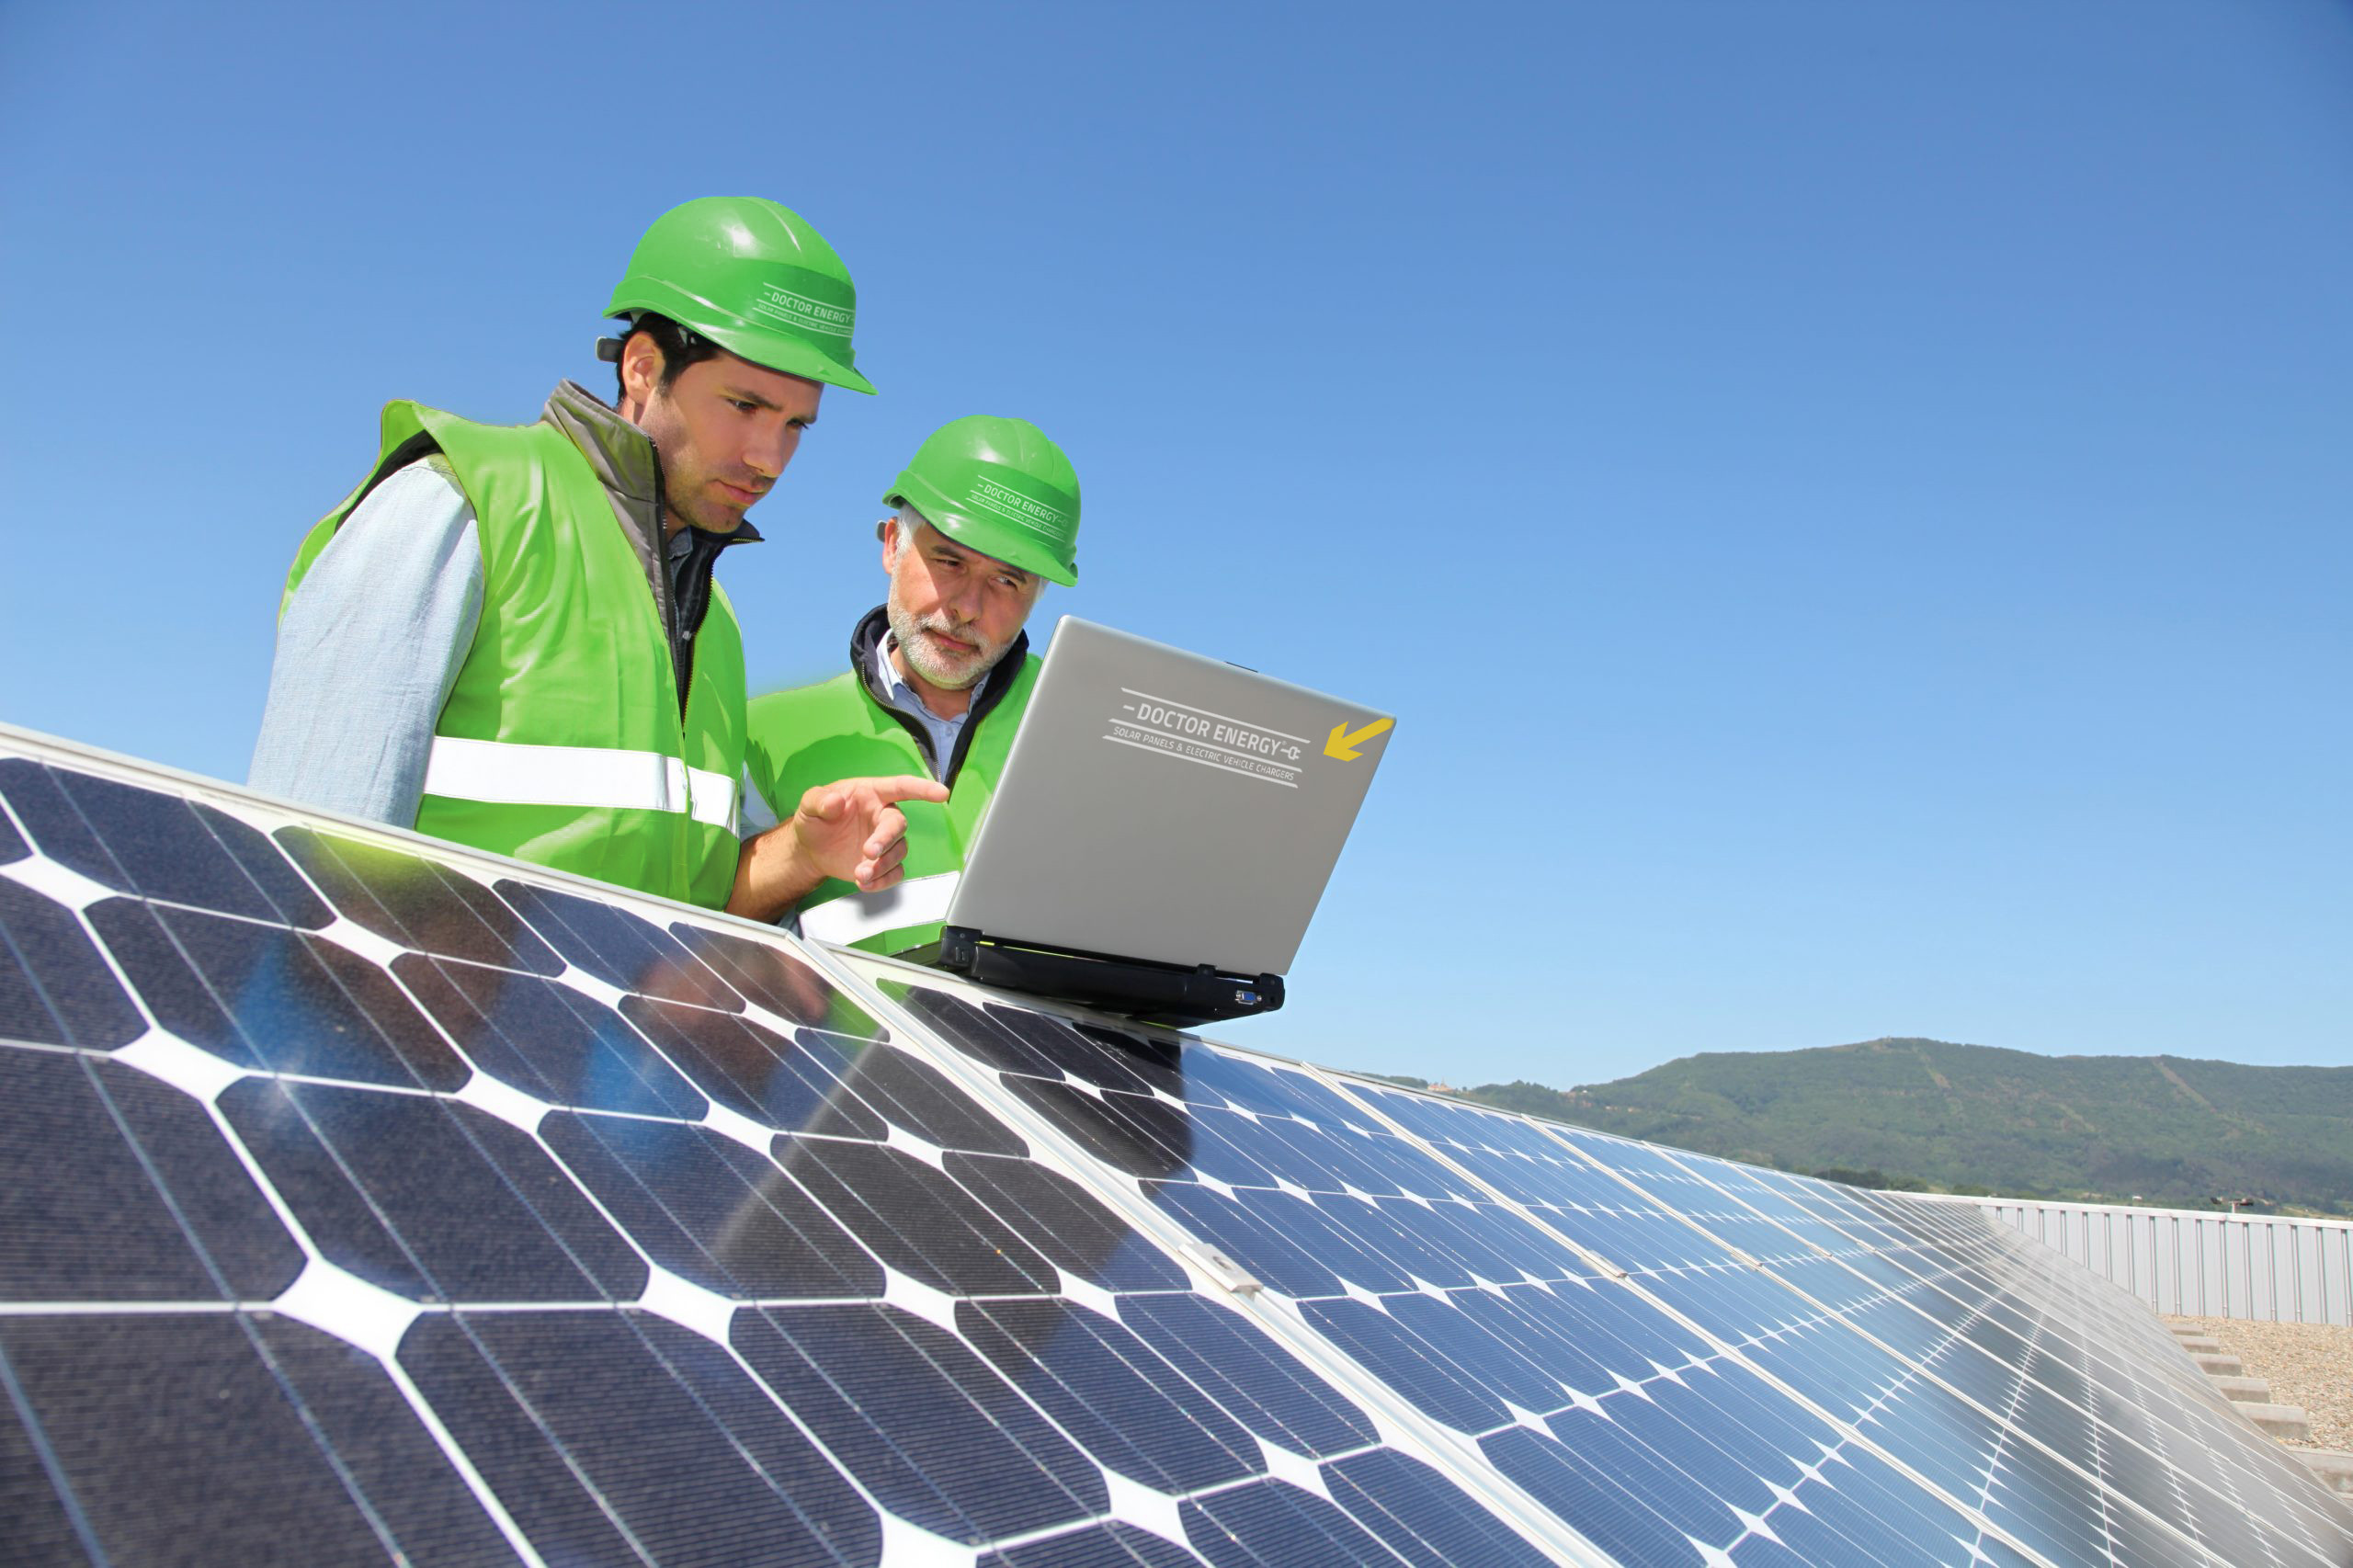 Instalaciones fotovoltaicas con dos operarios.